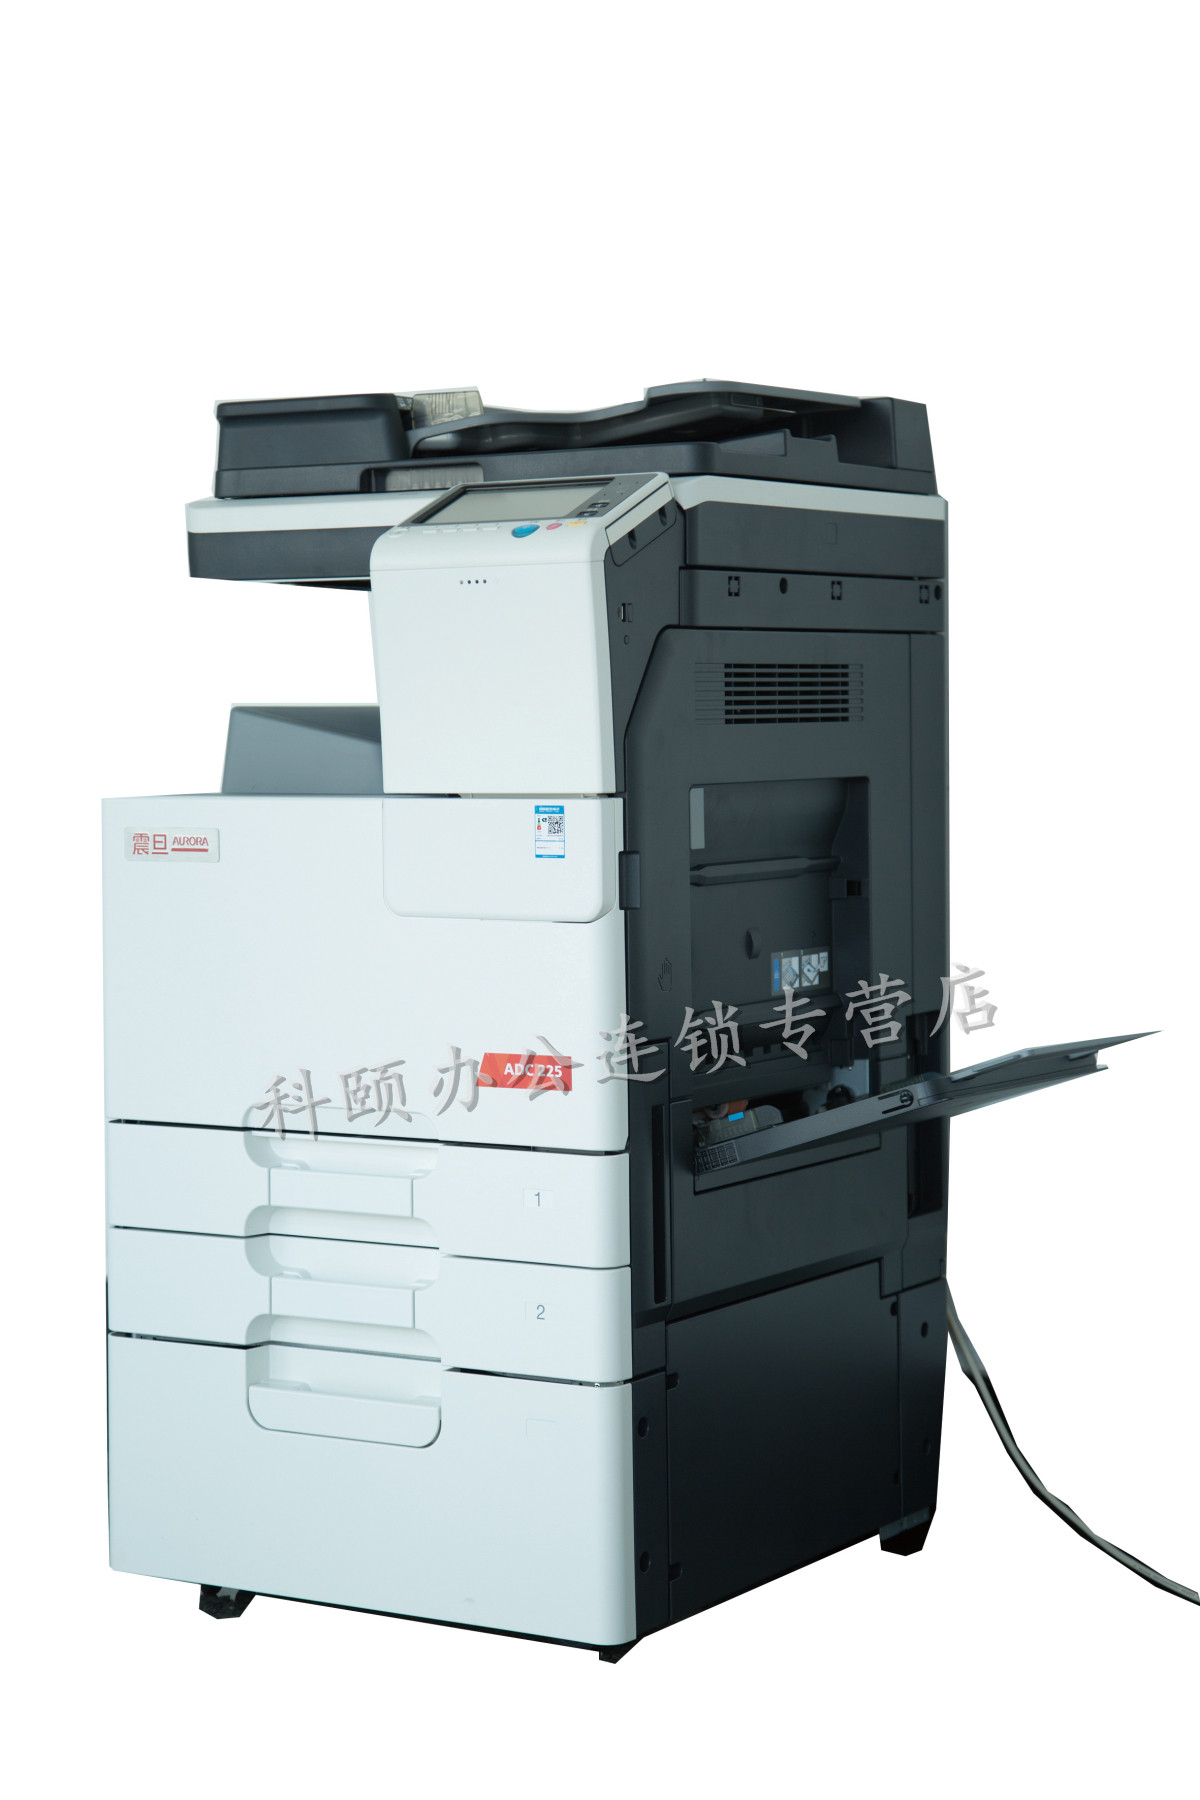 震旦ADC225彩色多功能复合机打印复印扫描一